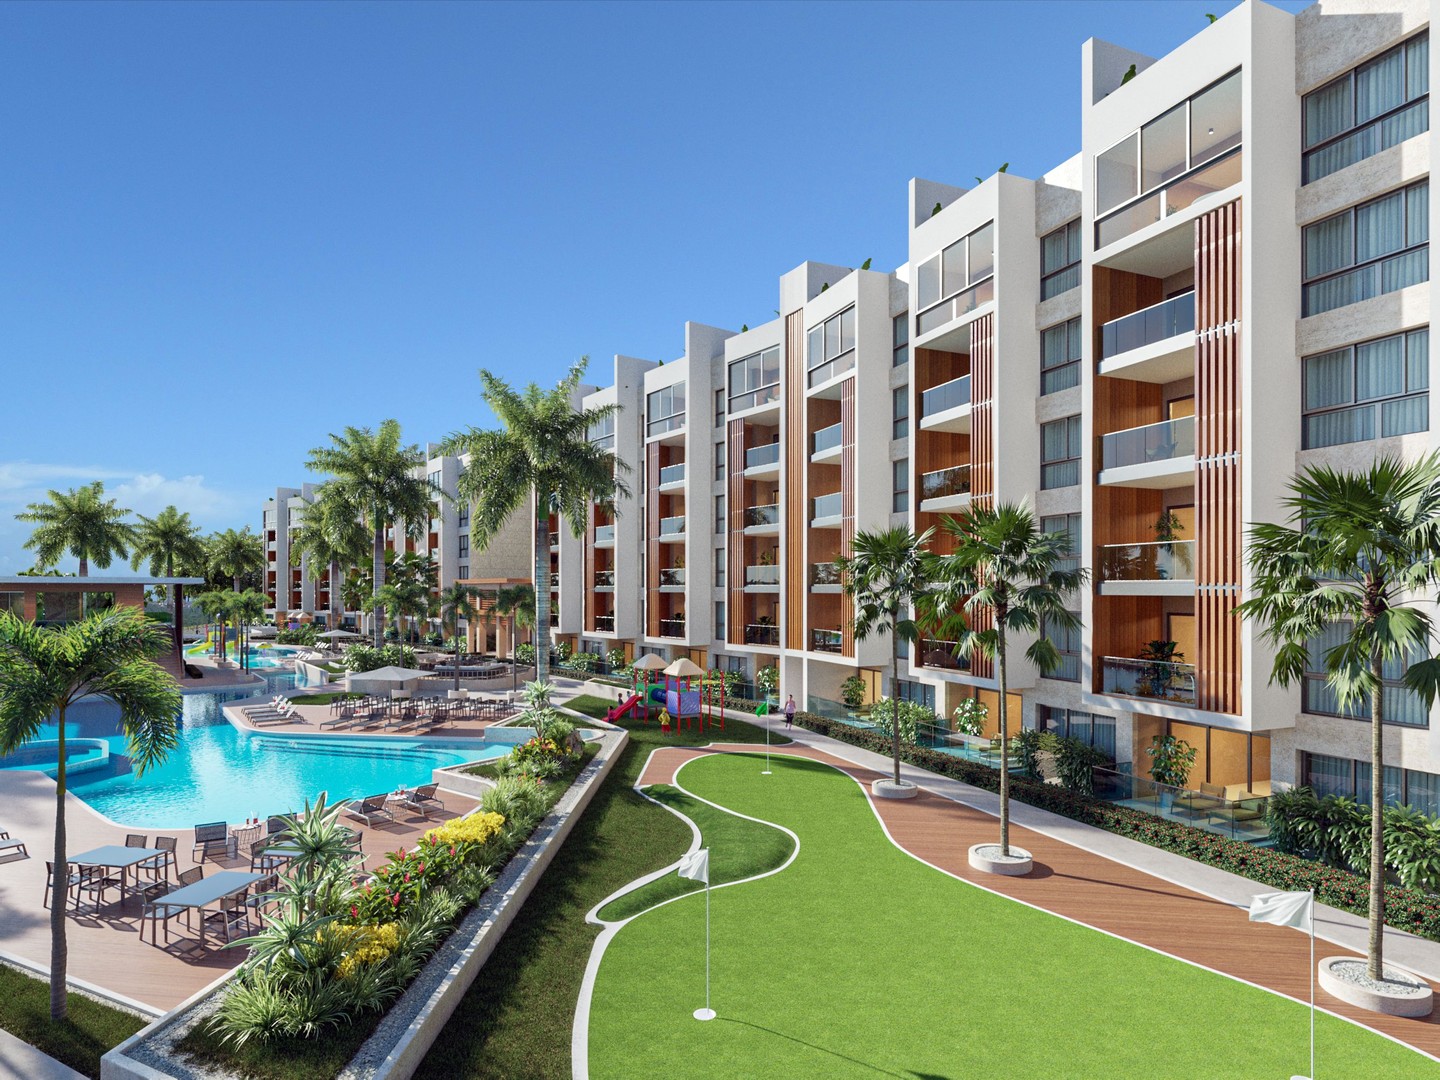 apartamentos - Apartamento Exclusivo Disponible en Cap Cana: Vive el Paraíso Caribeño